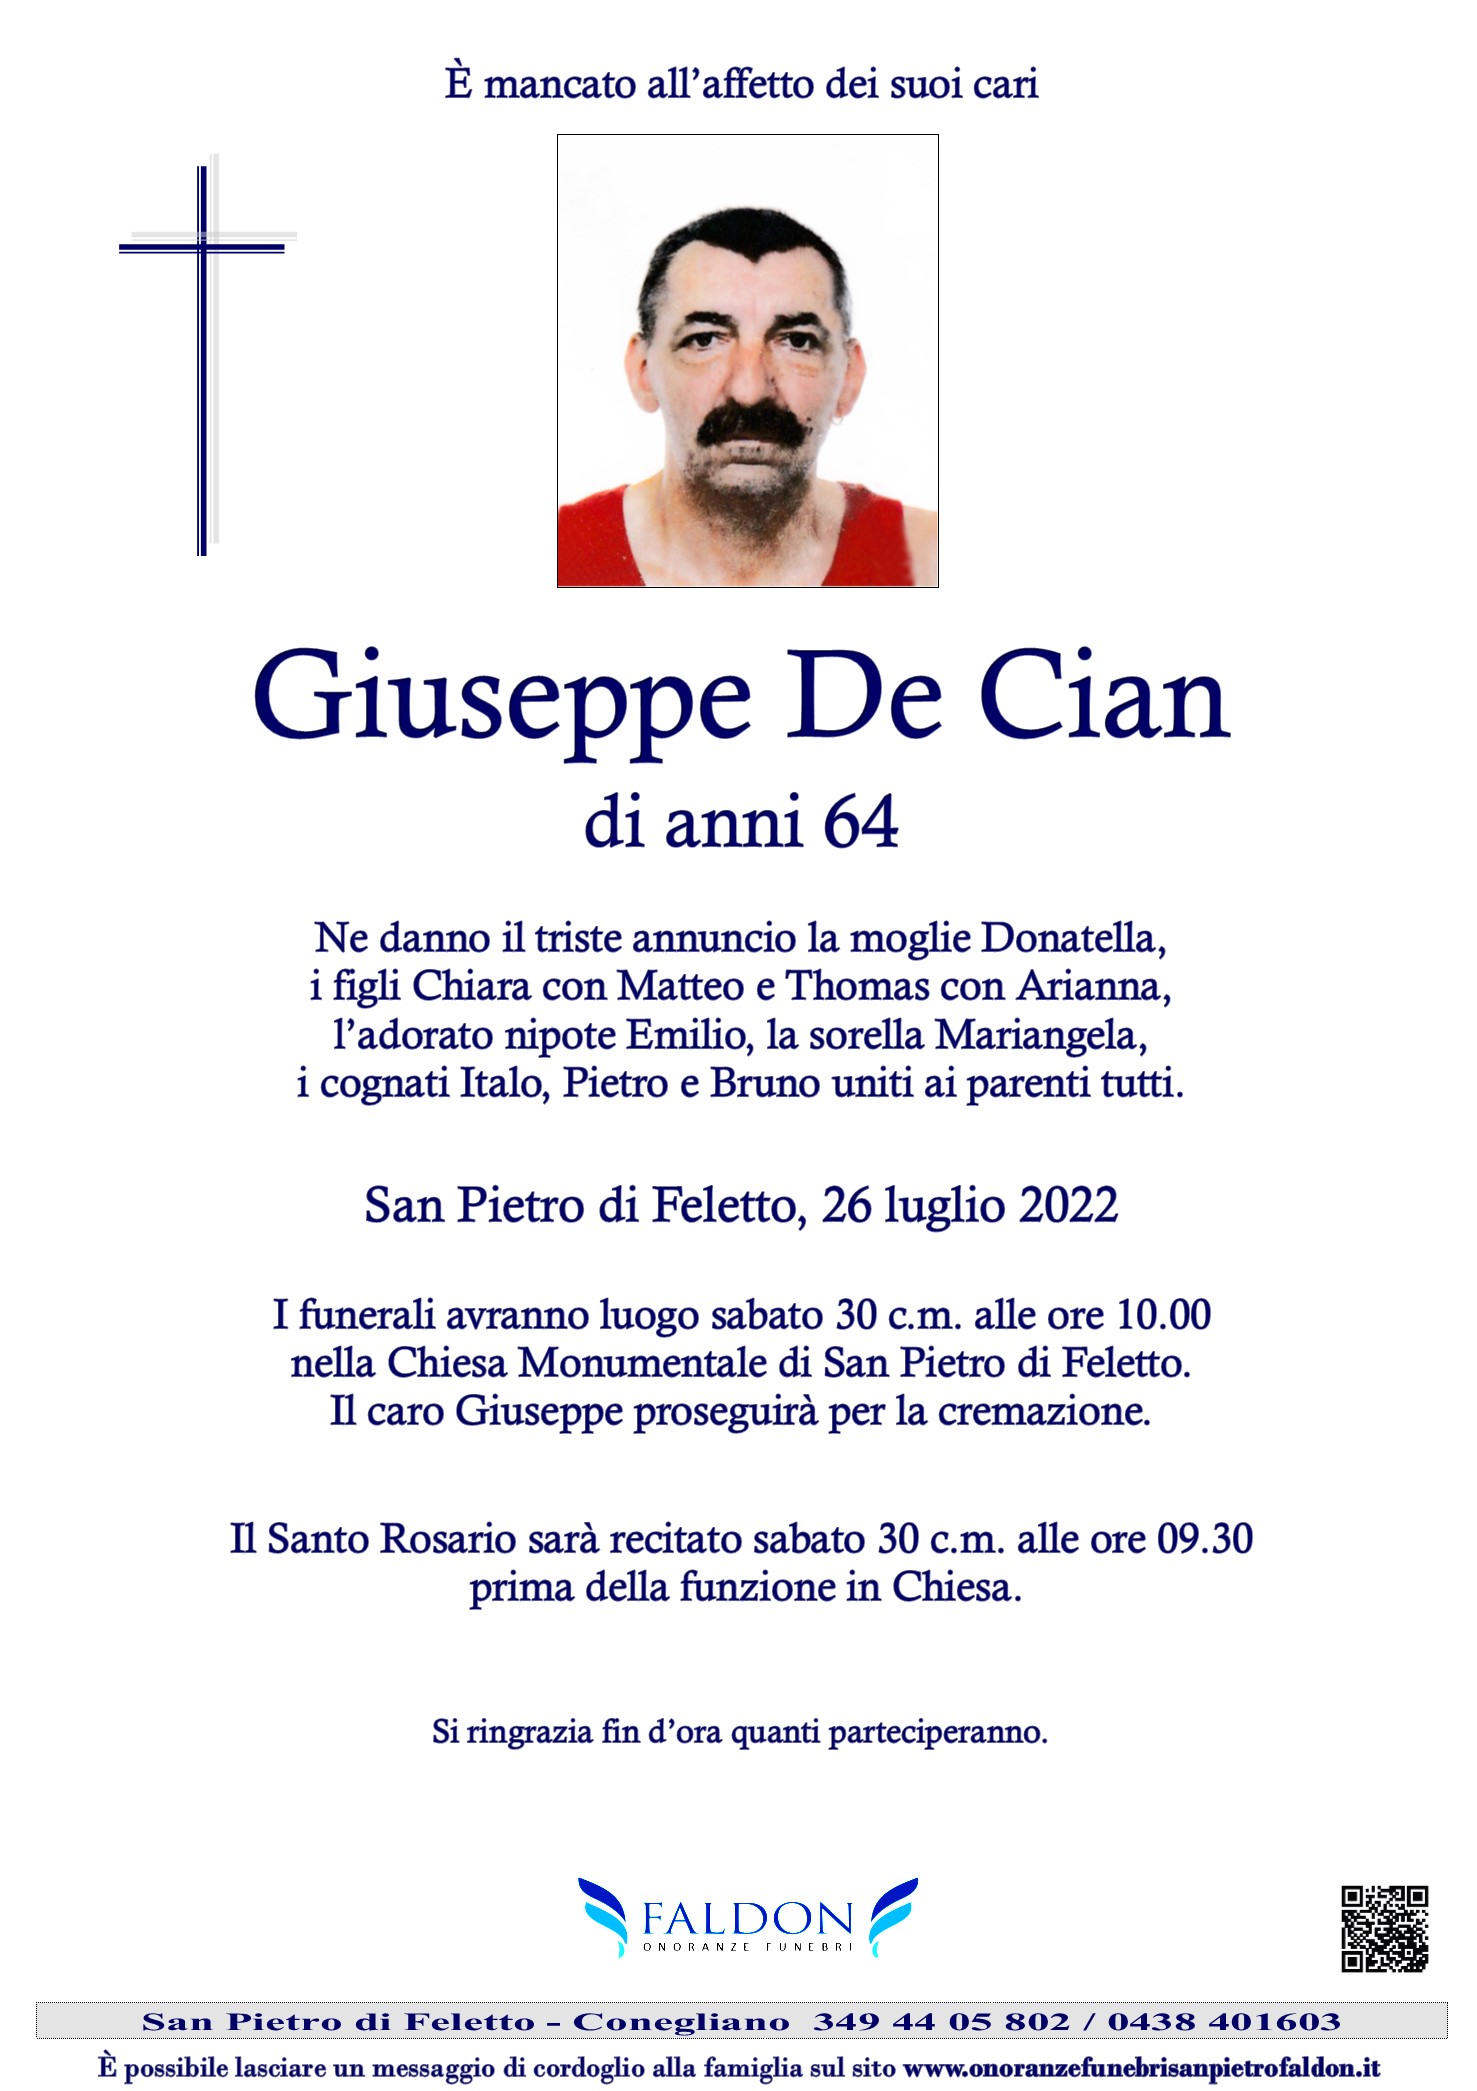 Giuseppe De Cian